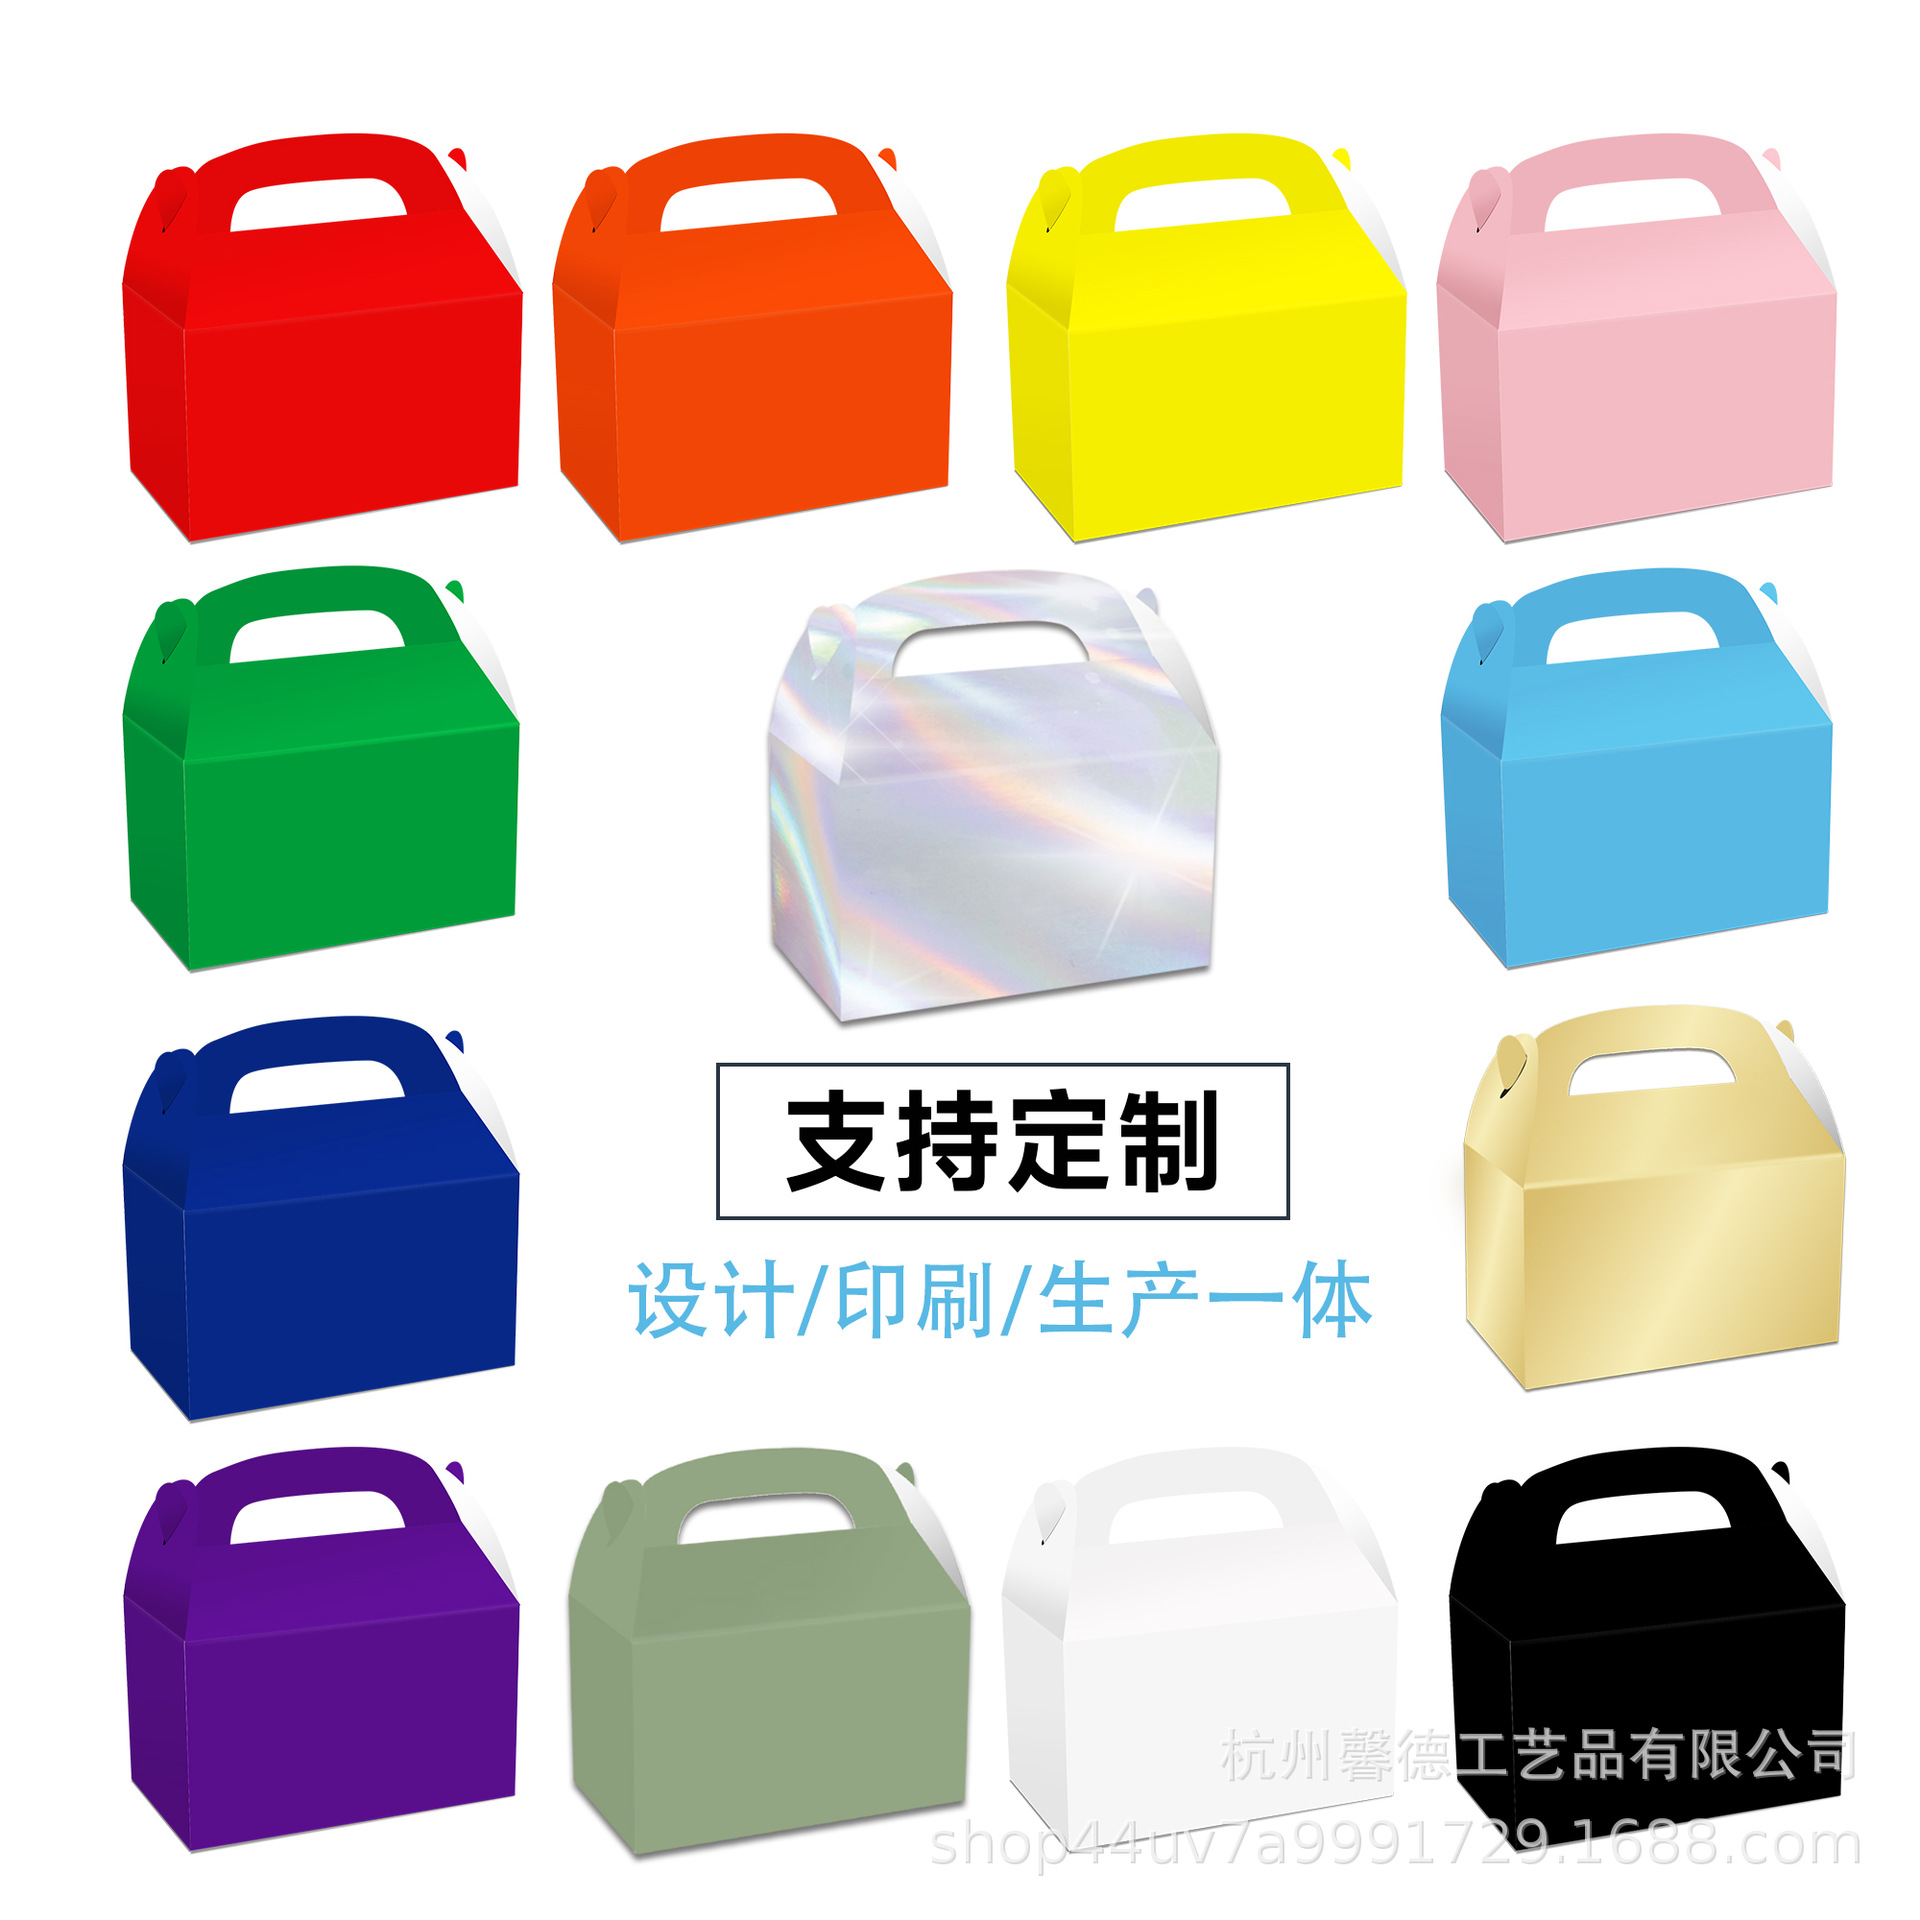 DD047亚马逊 纯色纸盒 免费设计LOGO  白卡礼品彩盒牛皮手提礼盒